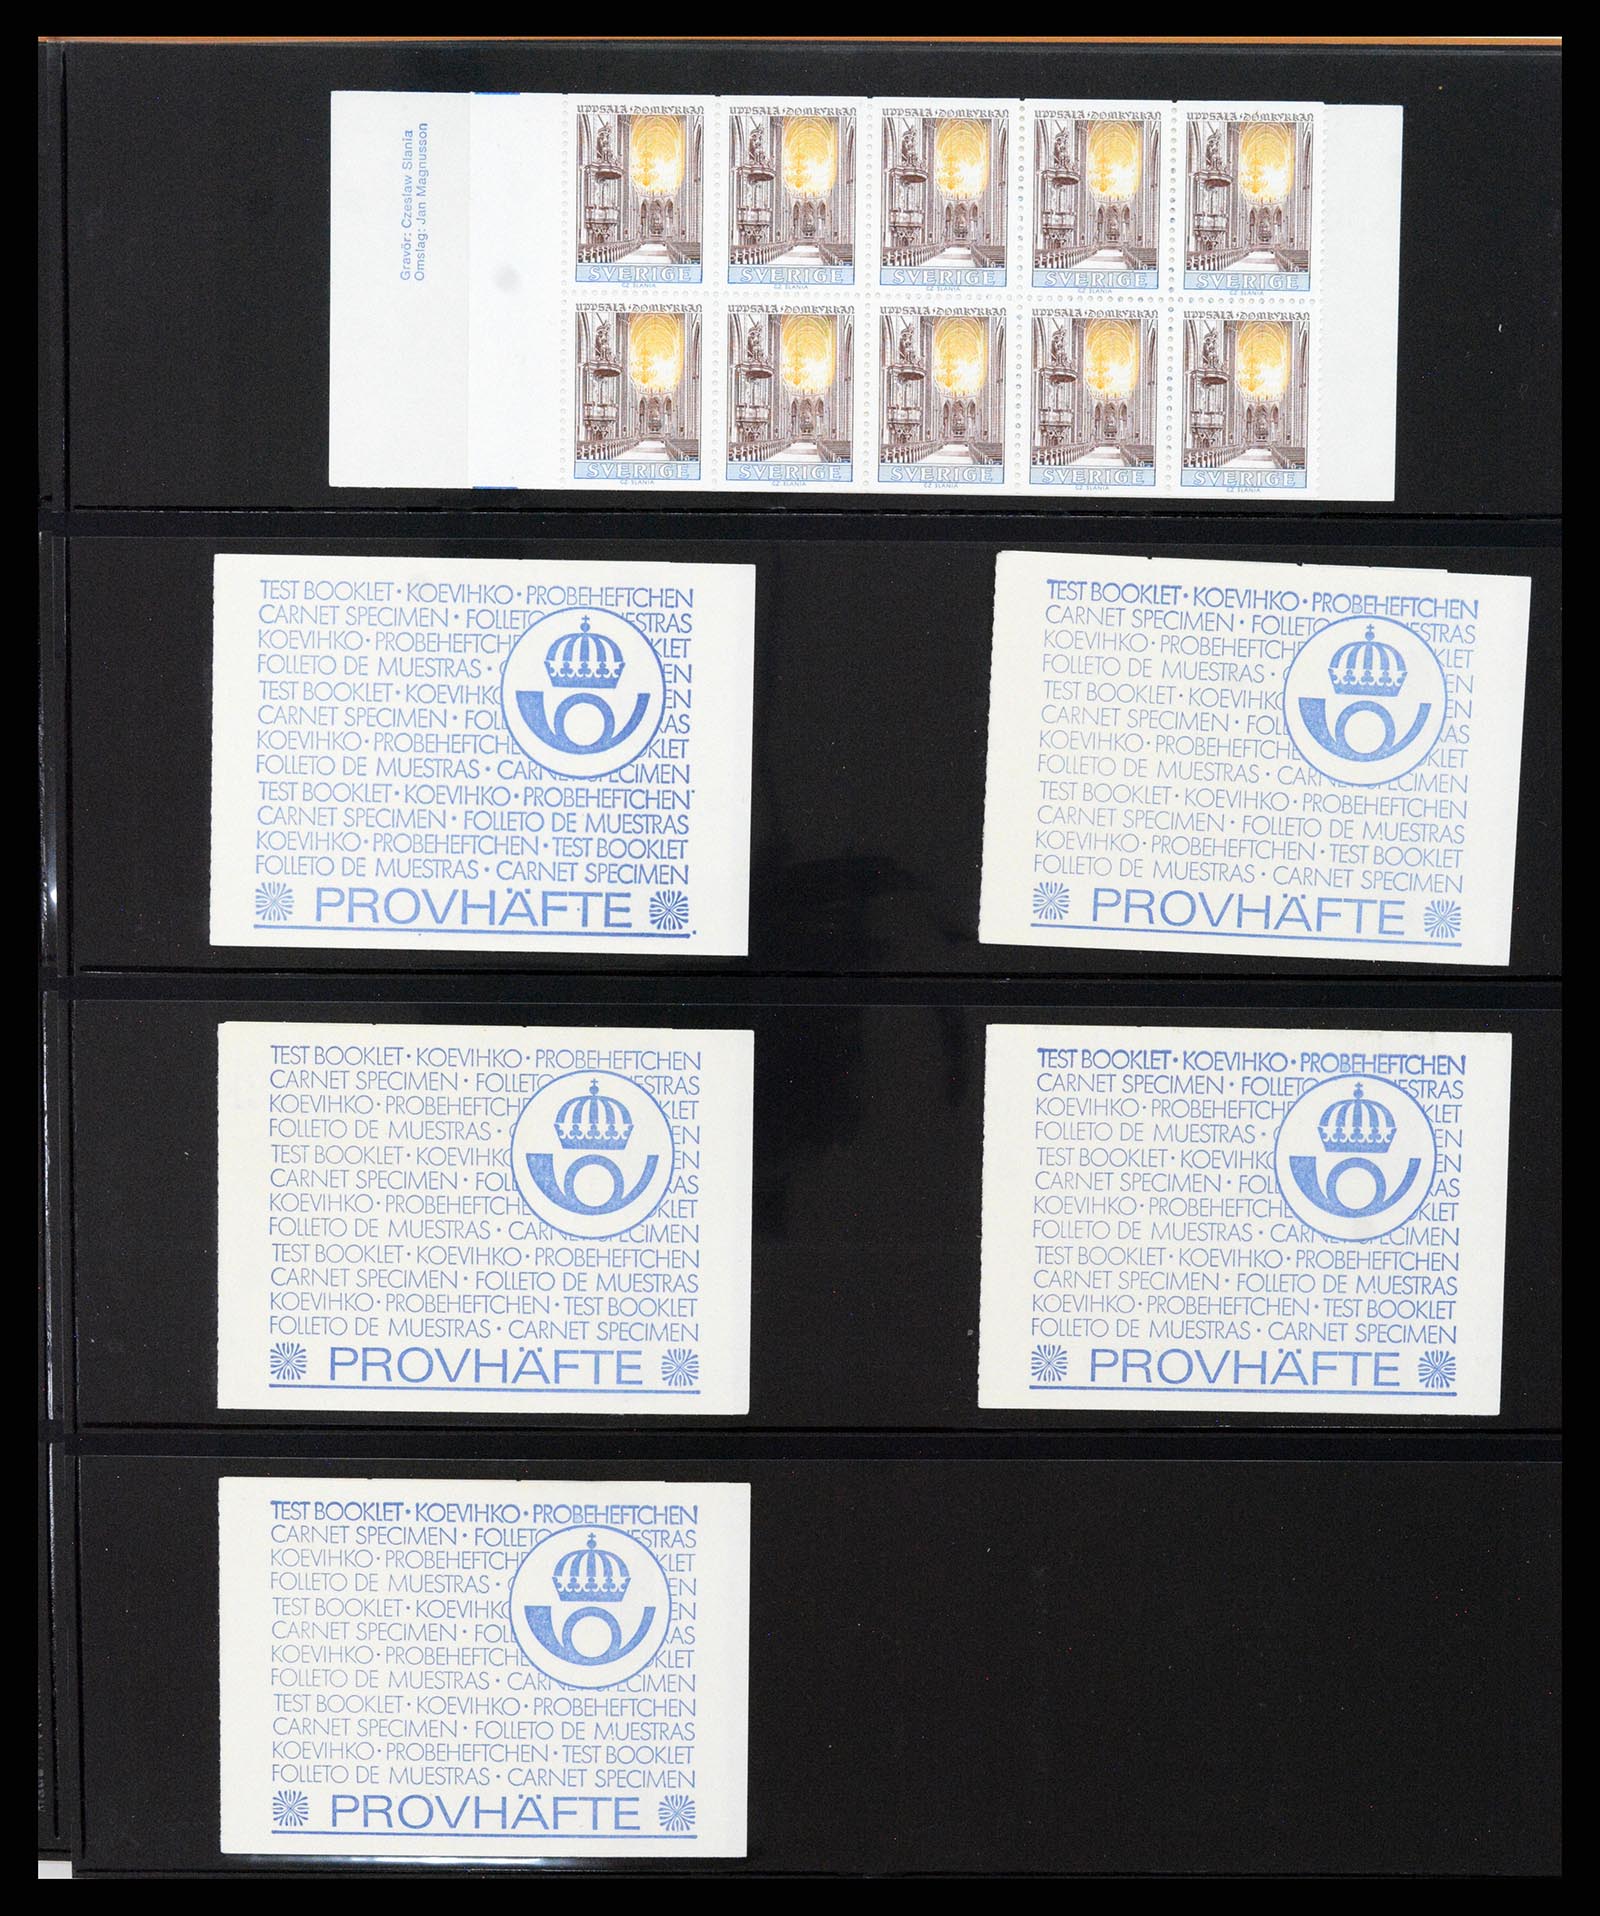 37345 054 - Stamp collection 37345 European countries souvenir sheets.